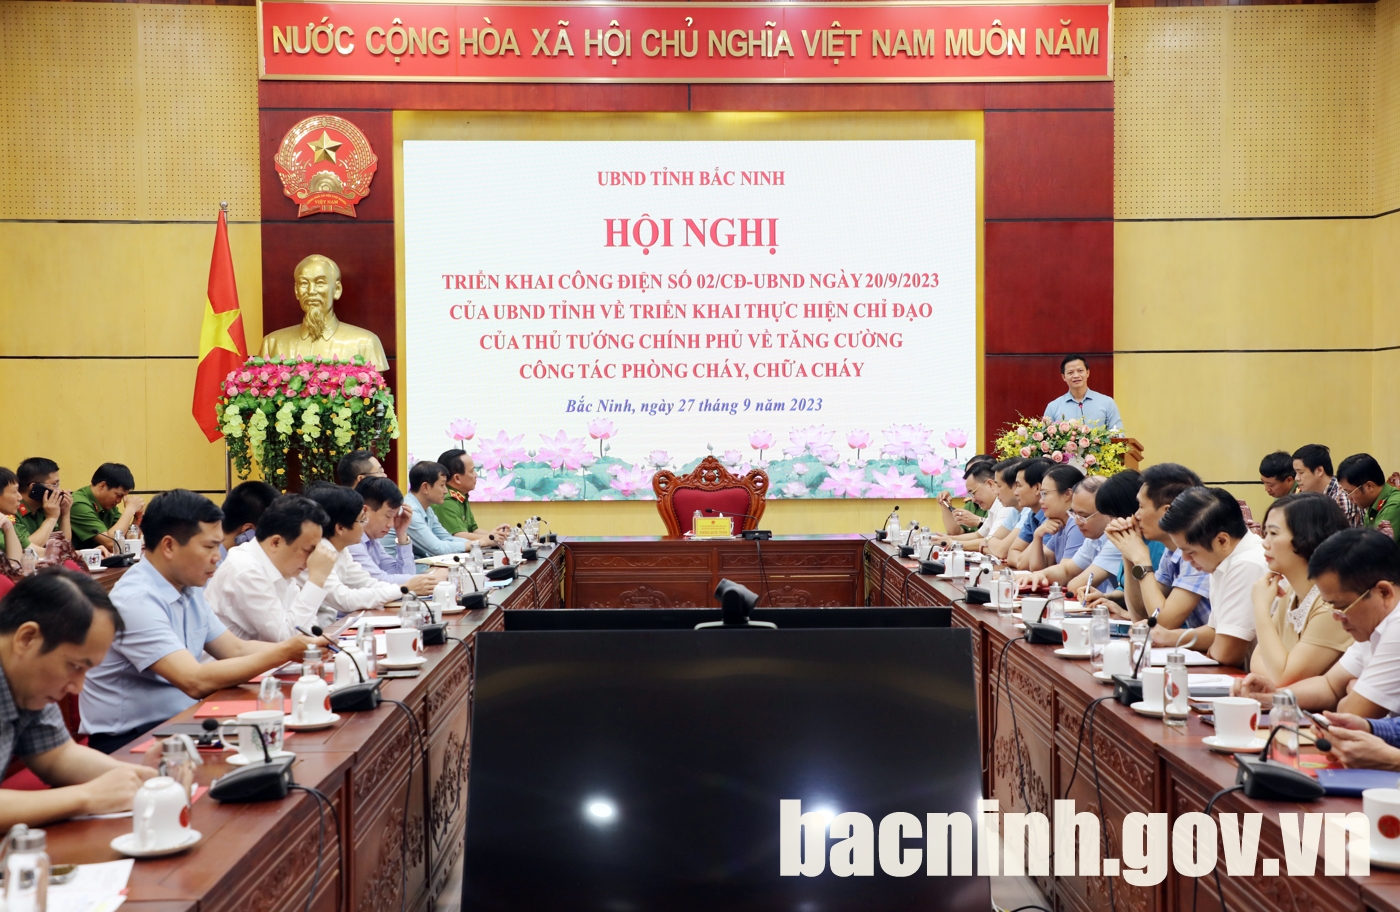 Hội nghị triển khai Công điện của UBND tỉnh về tăng cường công tác phòng cháy, chữa cháy trên địa bàn tỉnh